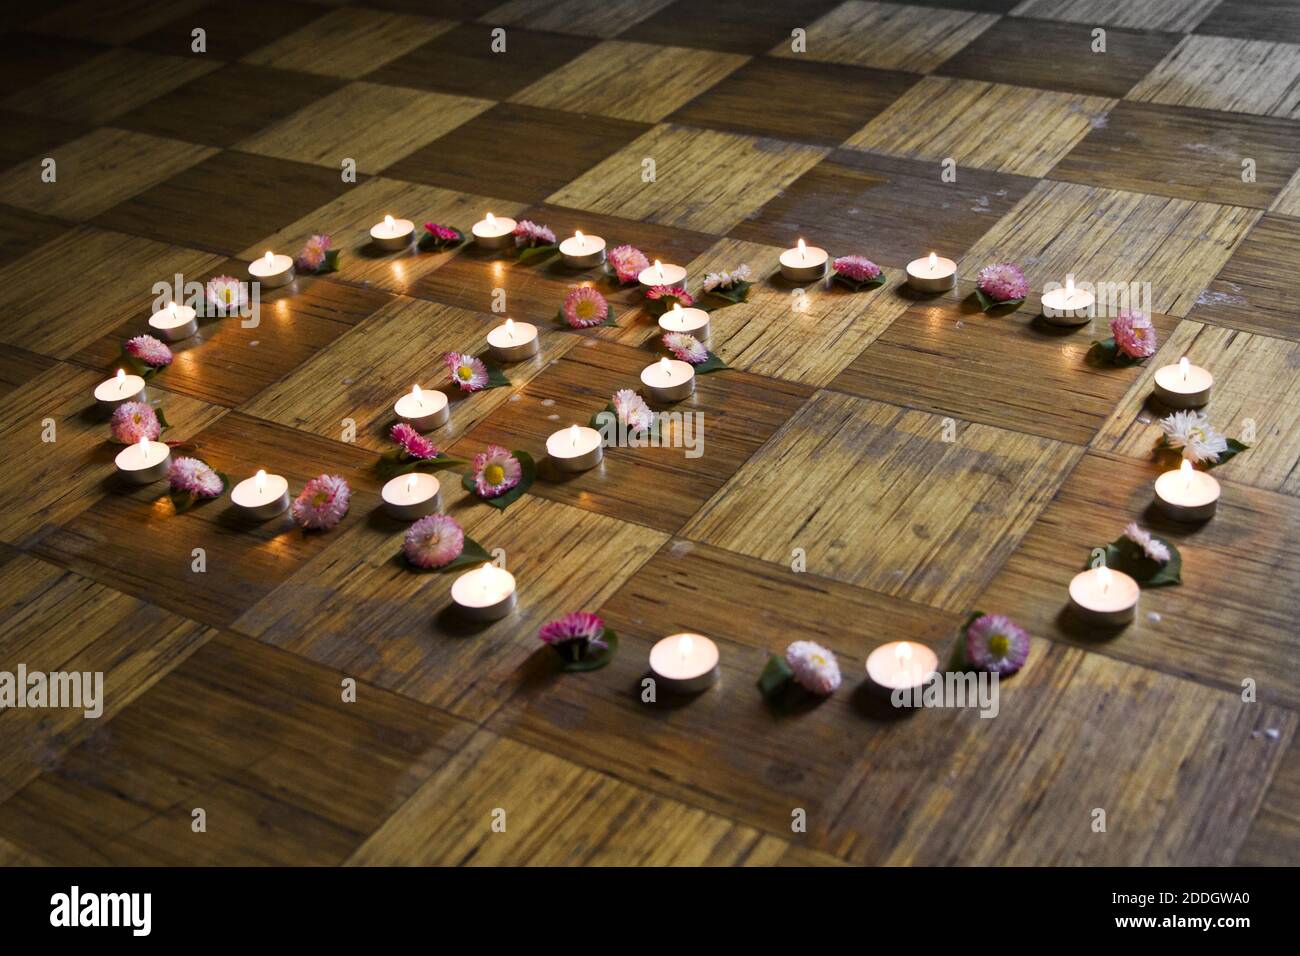 Candele illuminate e decorazioni floreali sul pavimento Foto Stock